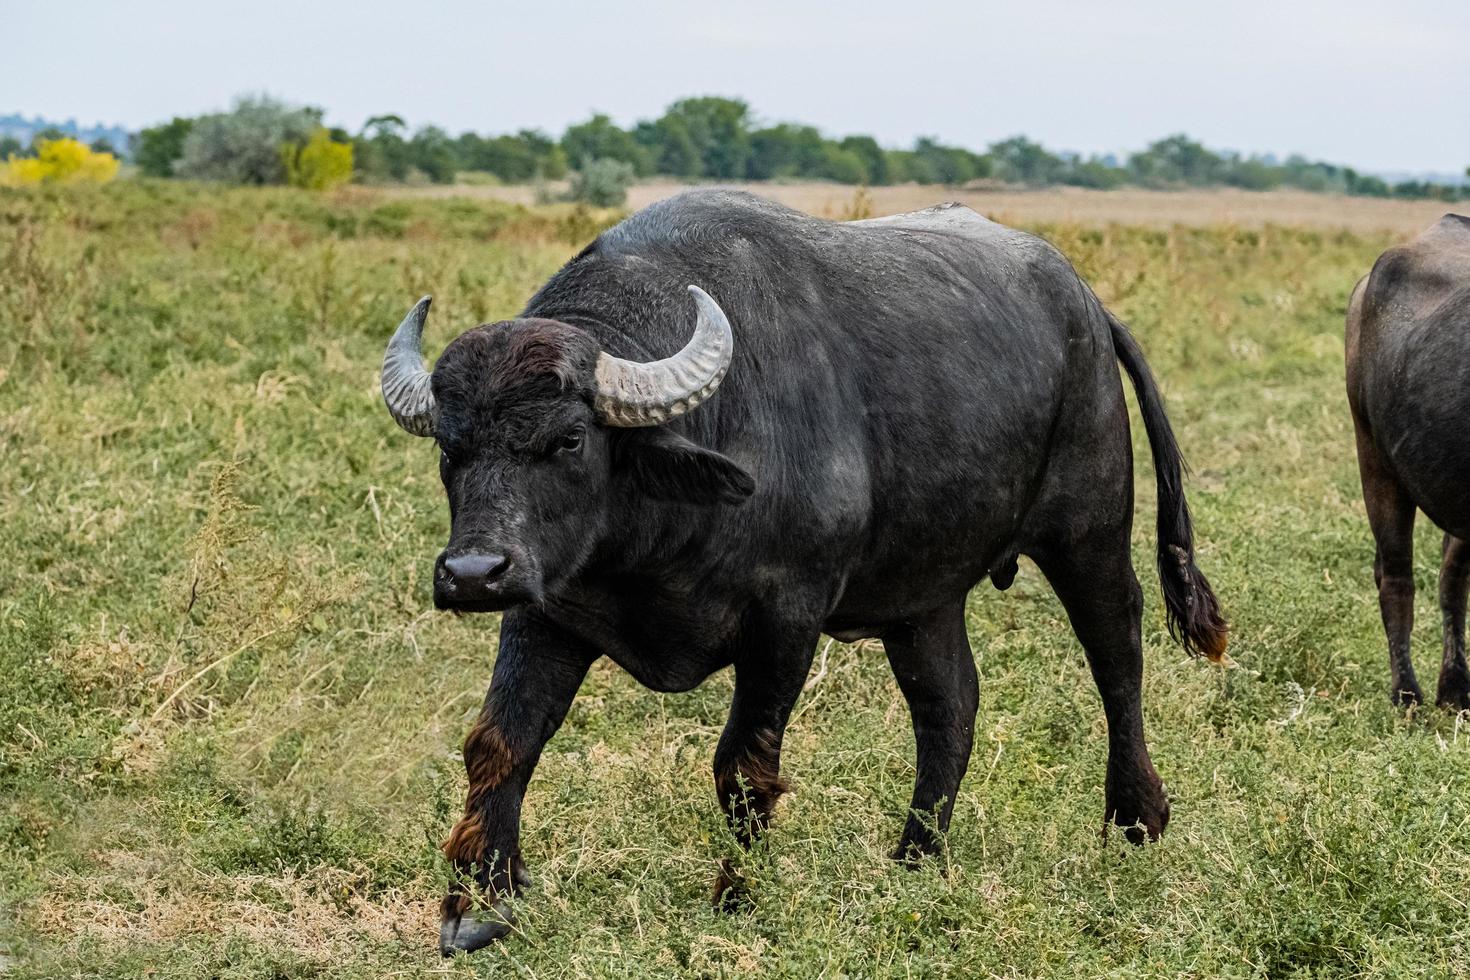 búfalo de agua negra en los campos foto